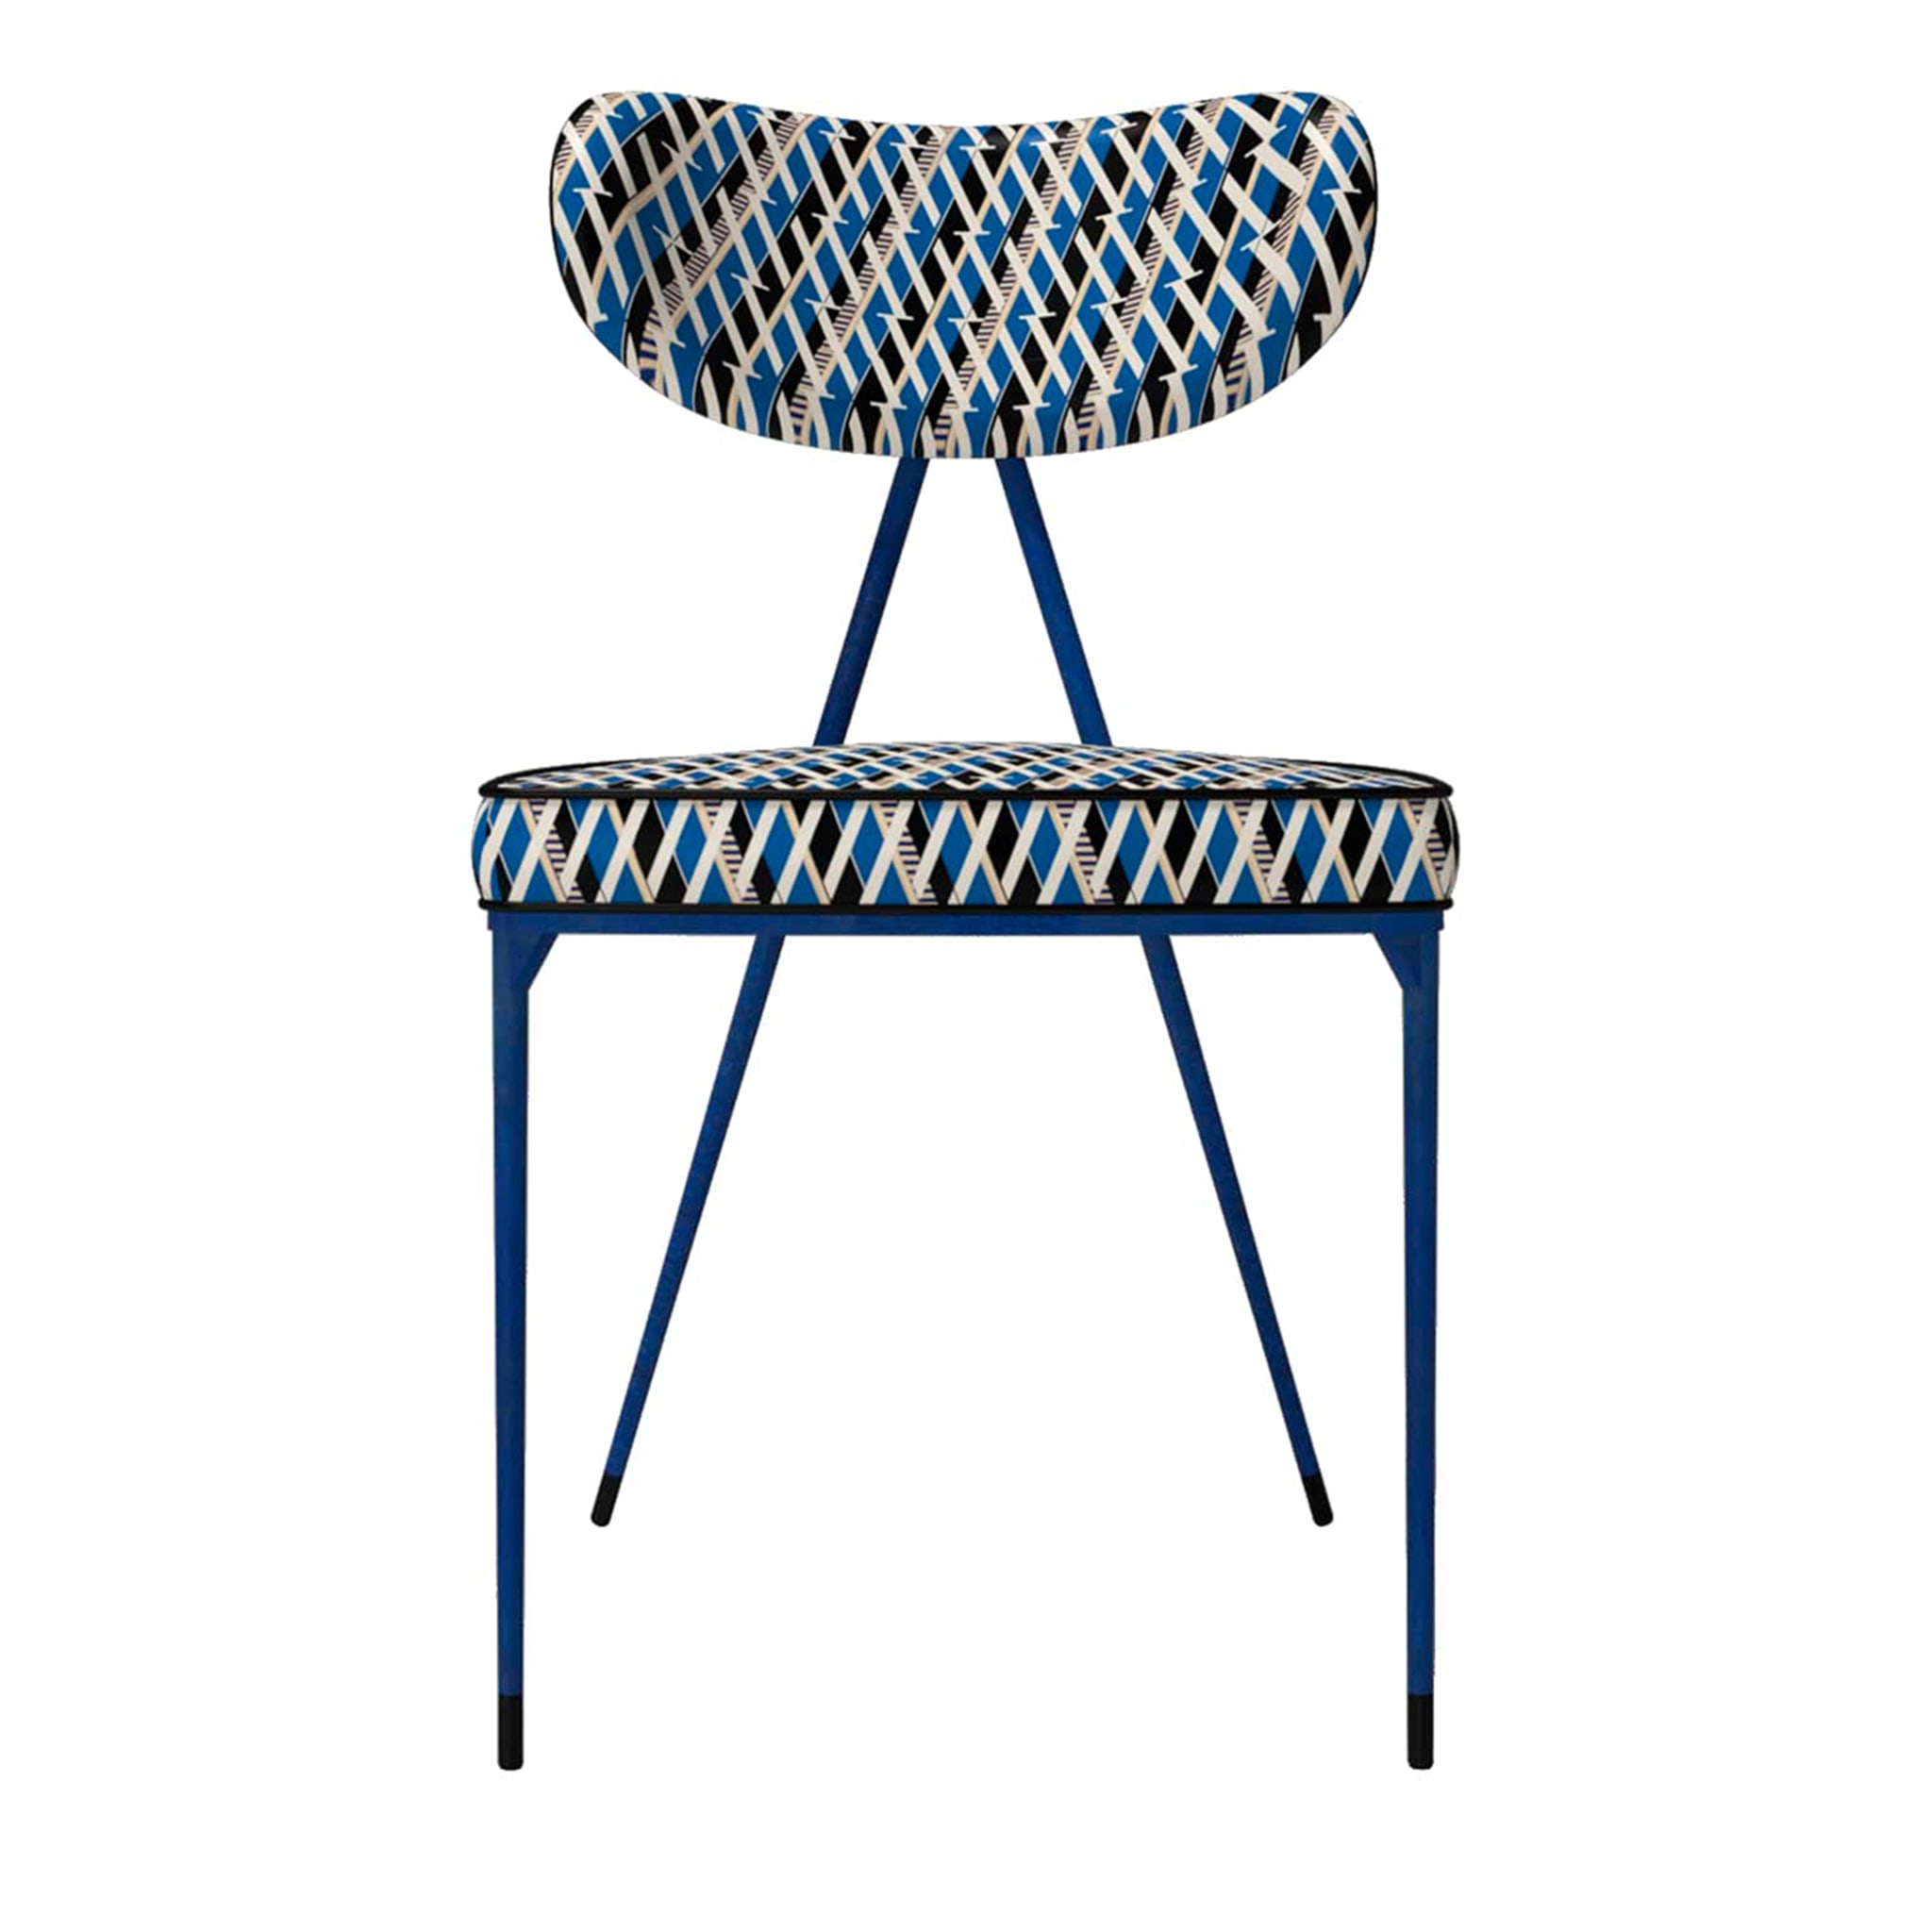 Kleins blauer Stuhl Objet - Hauptansicht